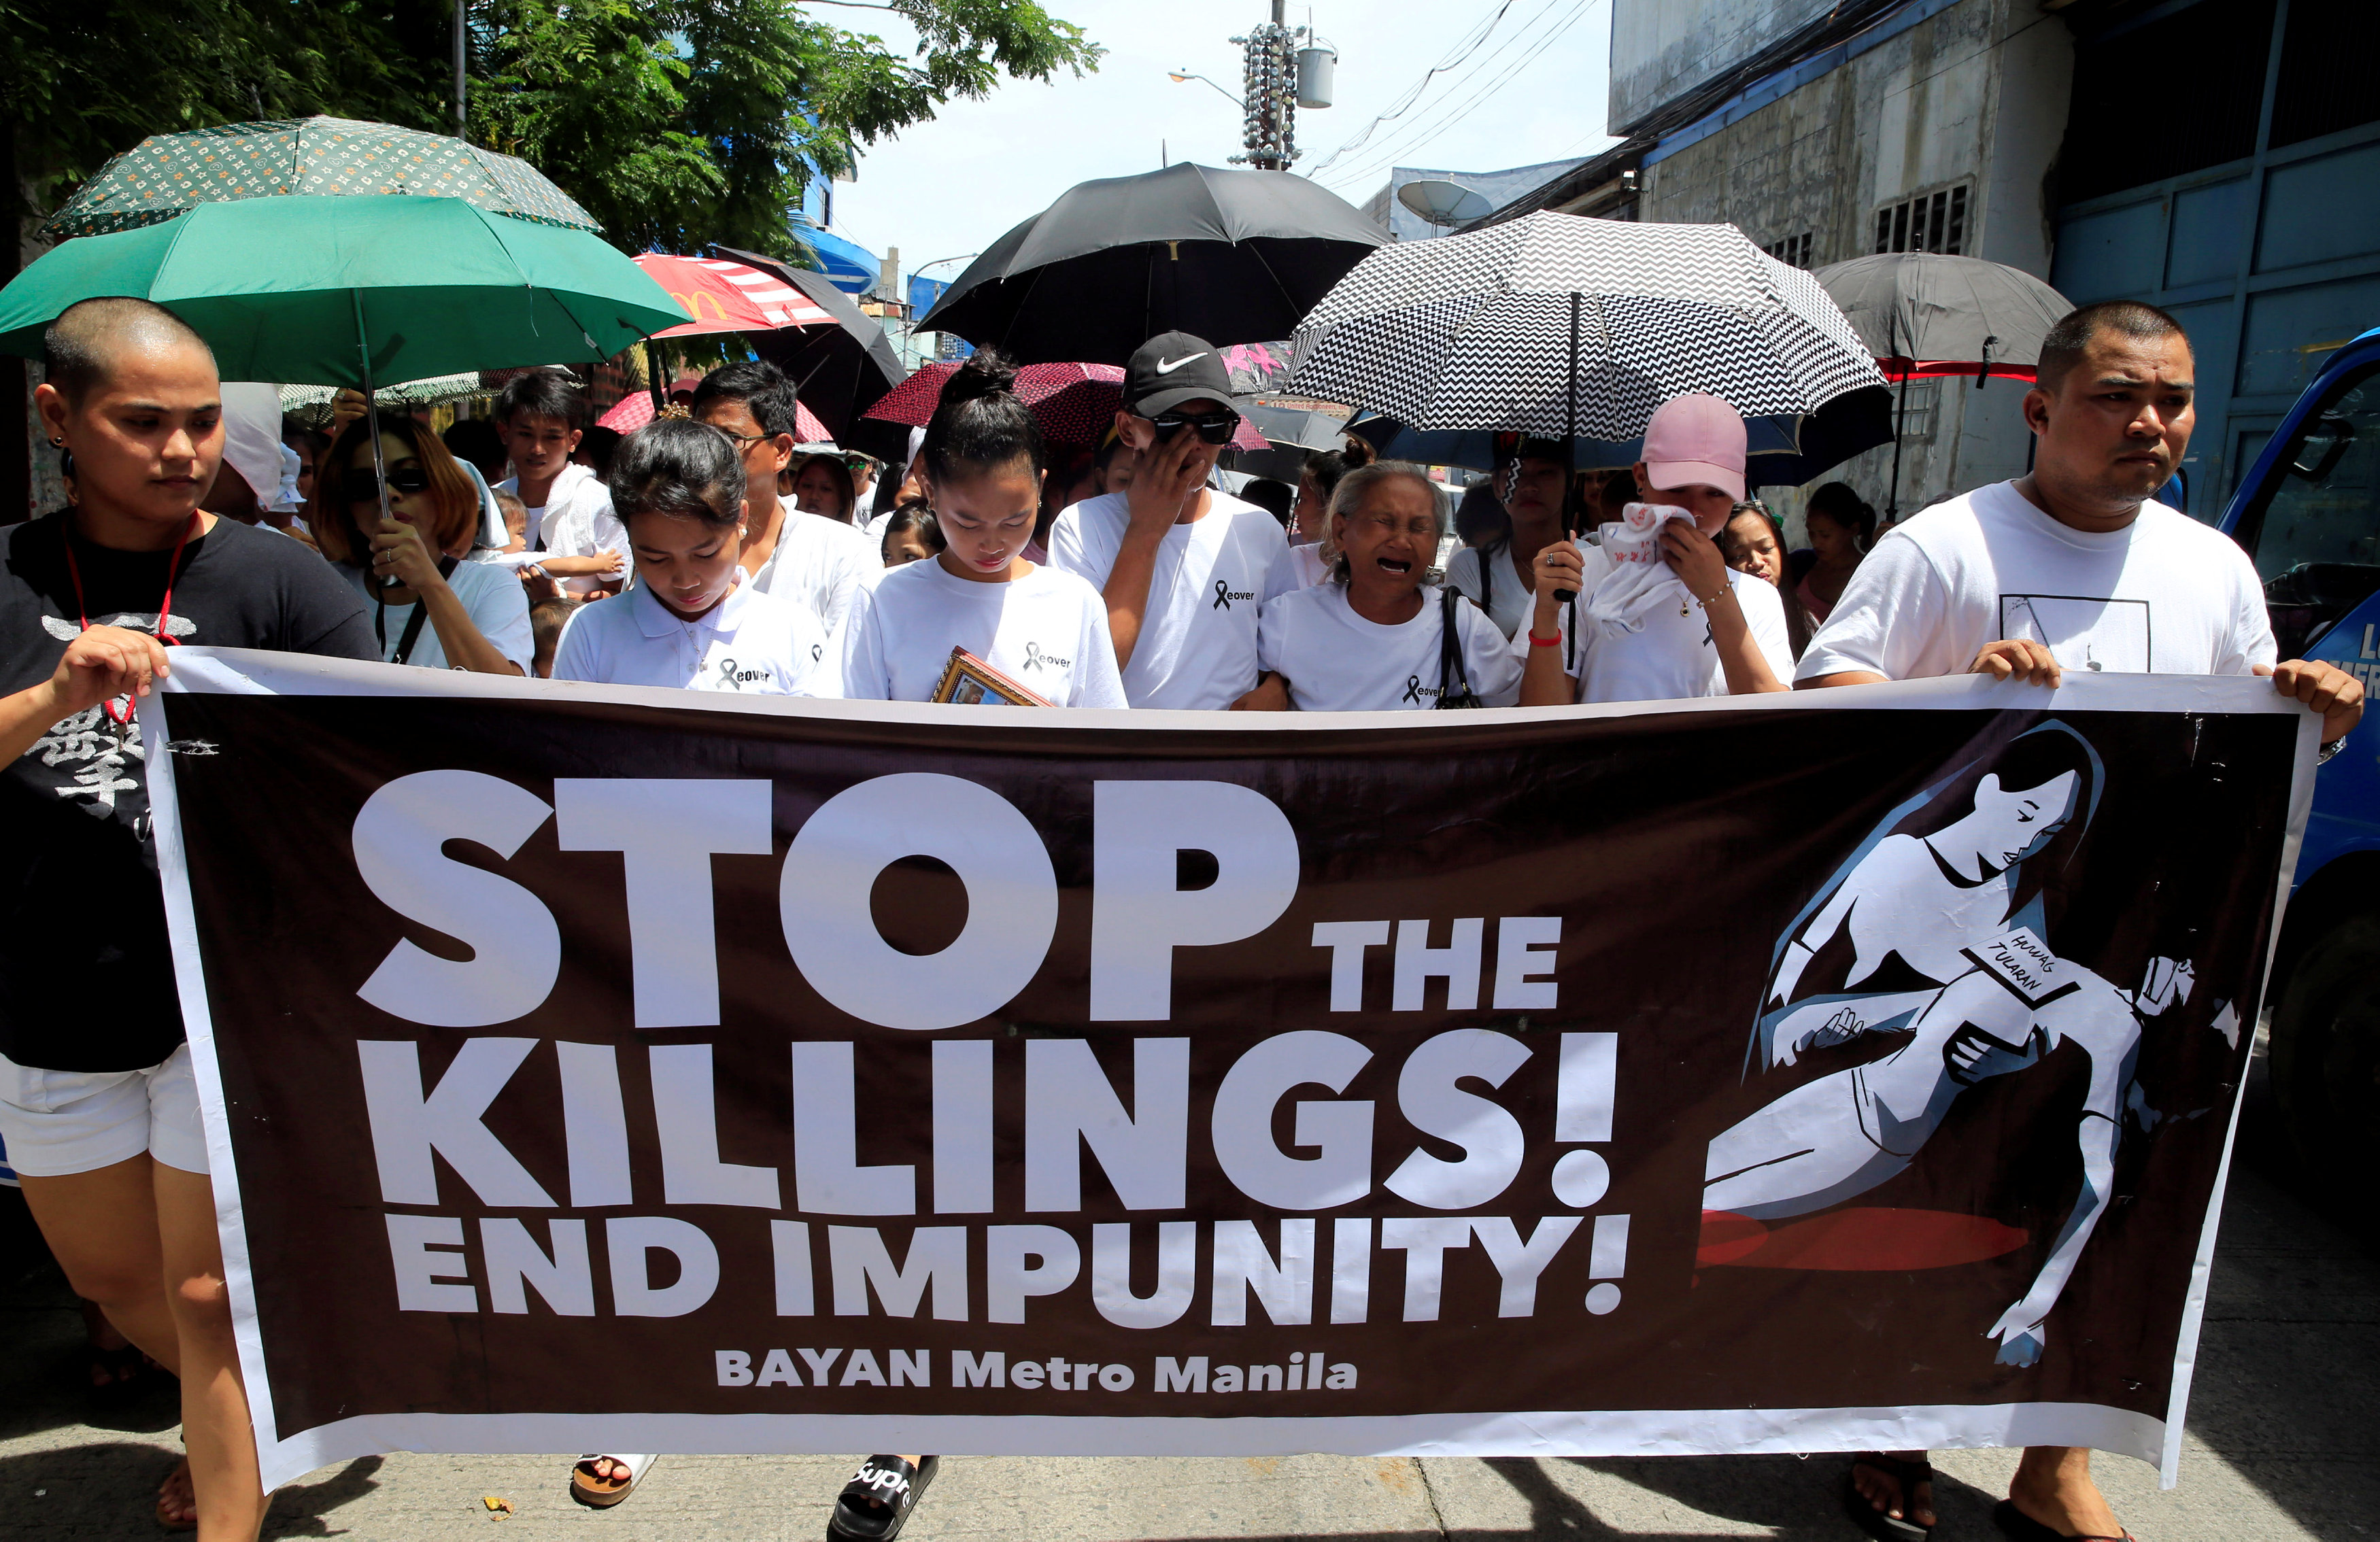 لافتة تطالب بوقف القتل خلال حملة مكافحة المخدرات فى الفلبين